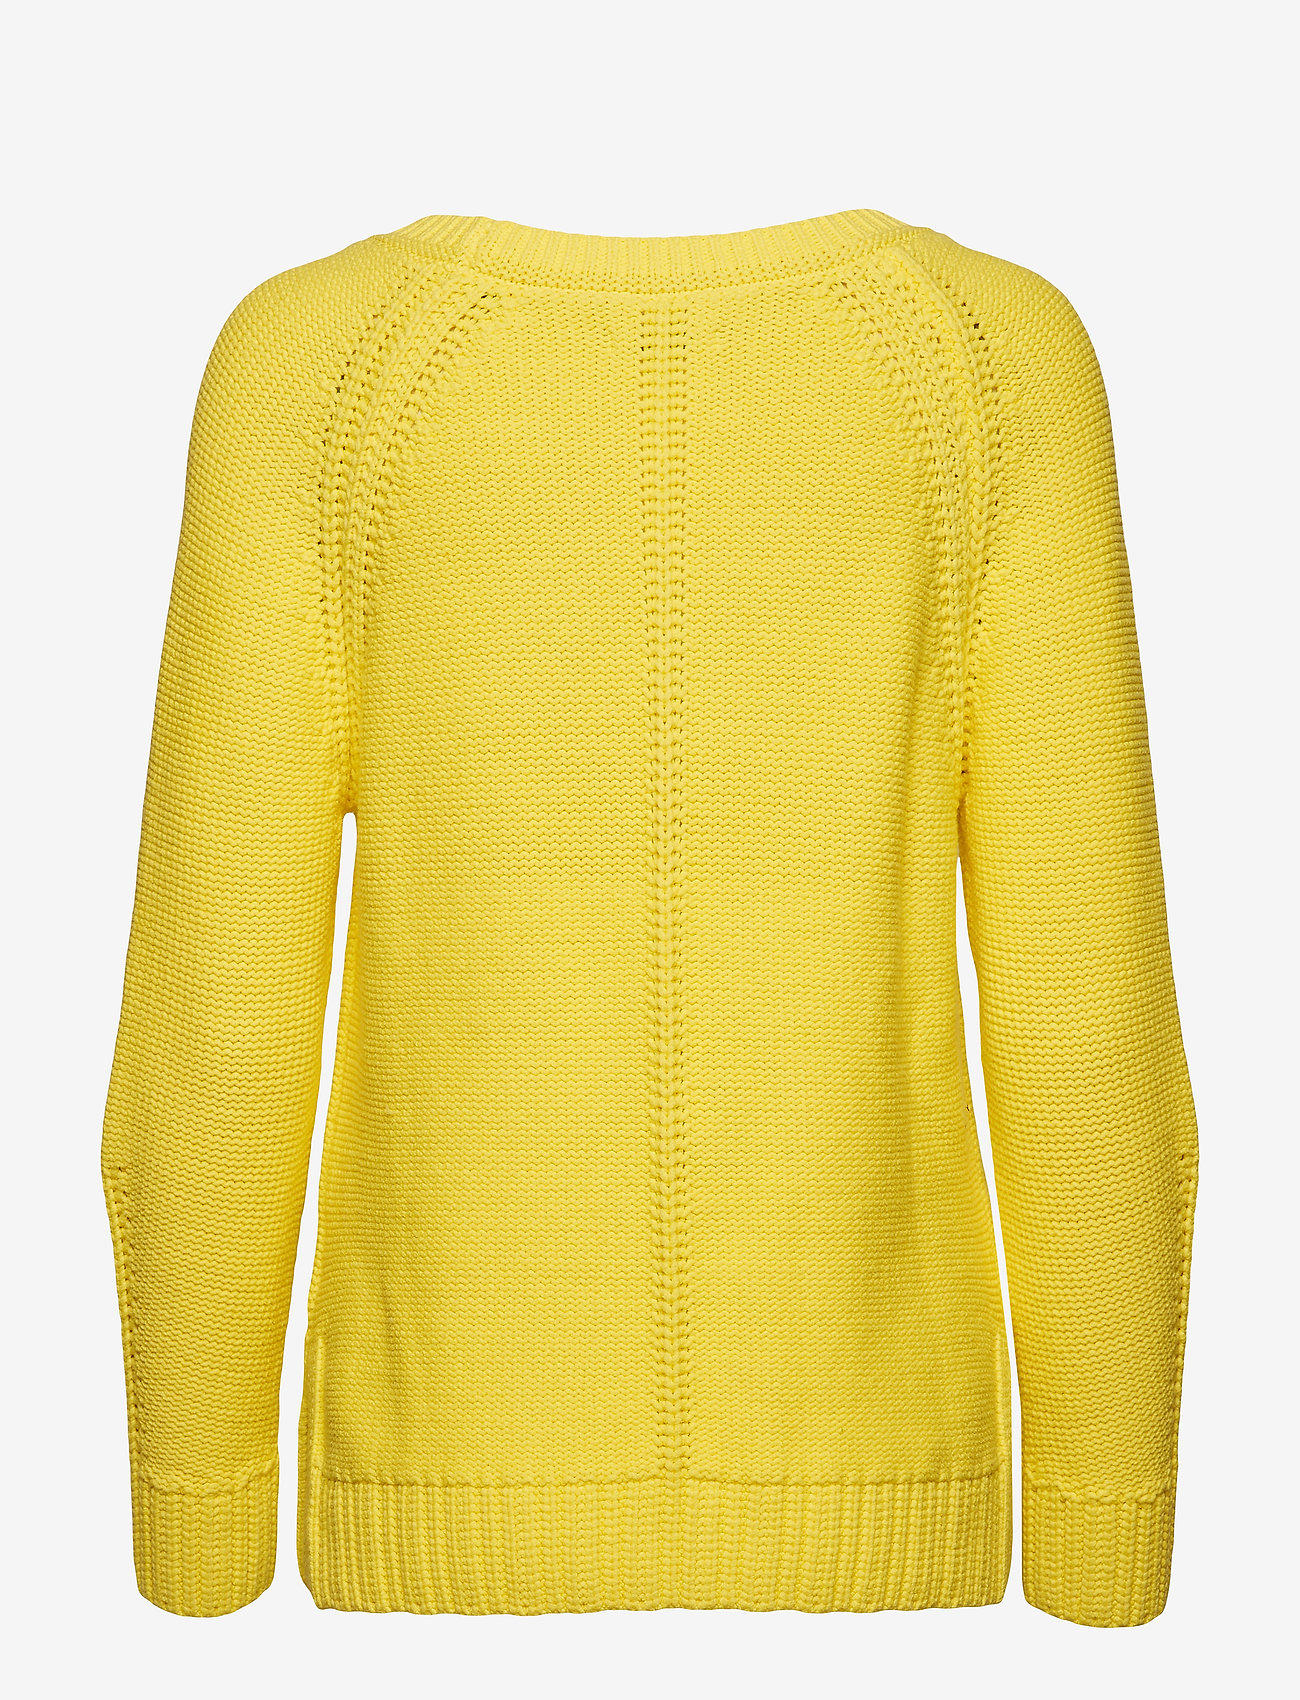 yellow polo pullover